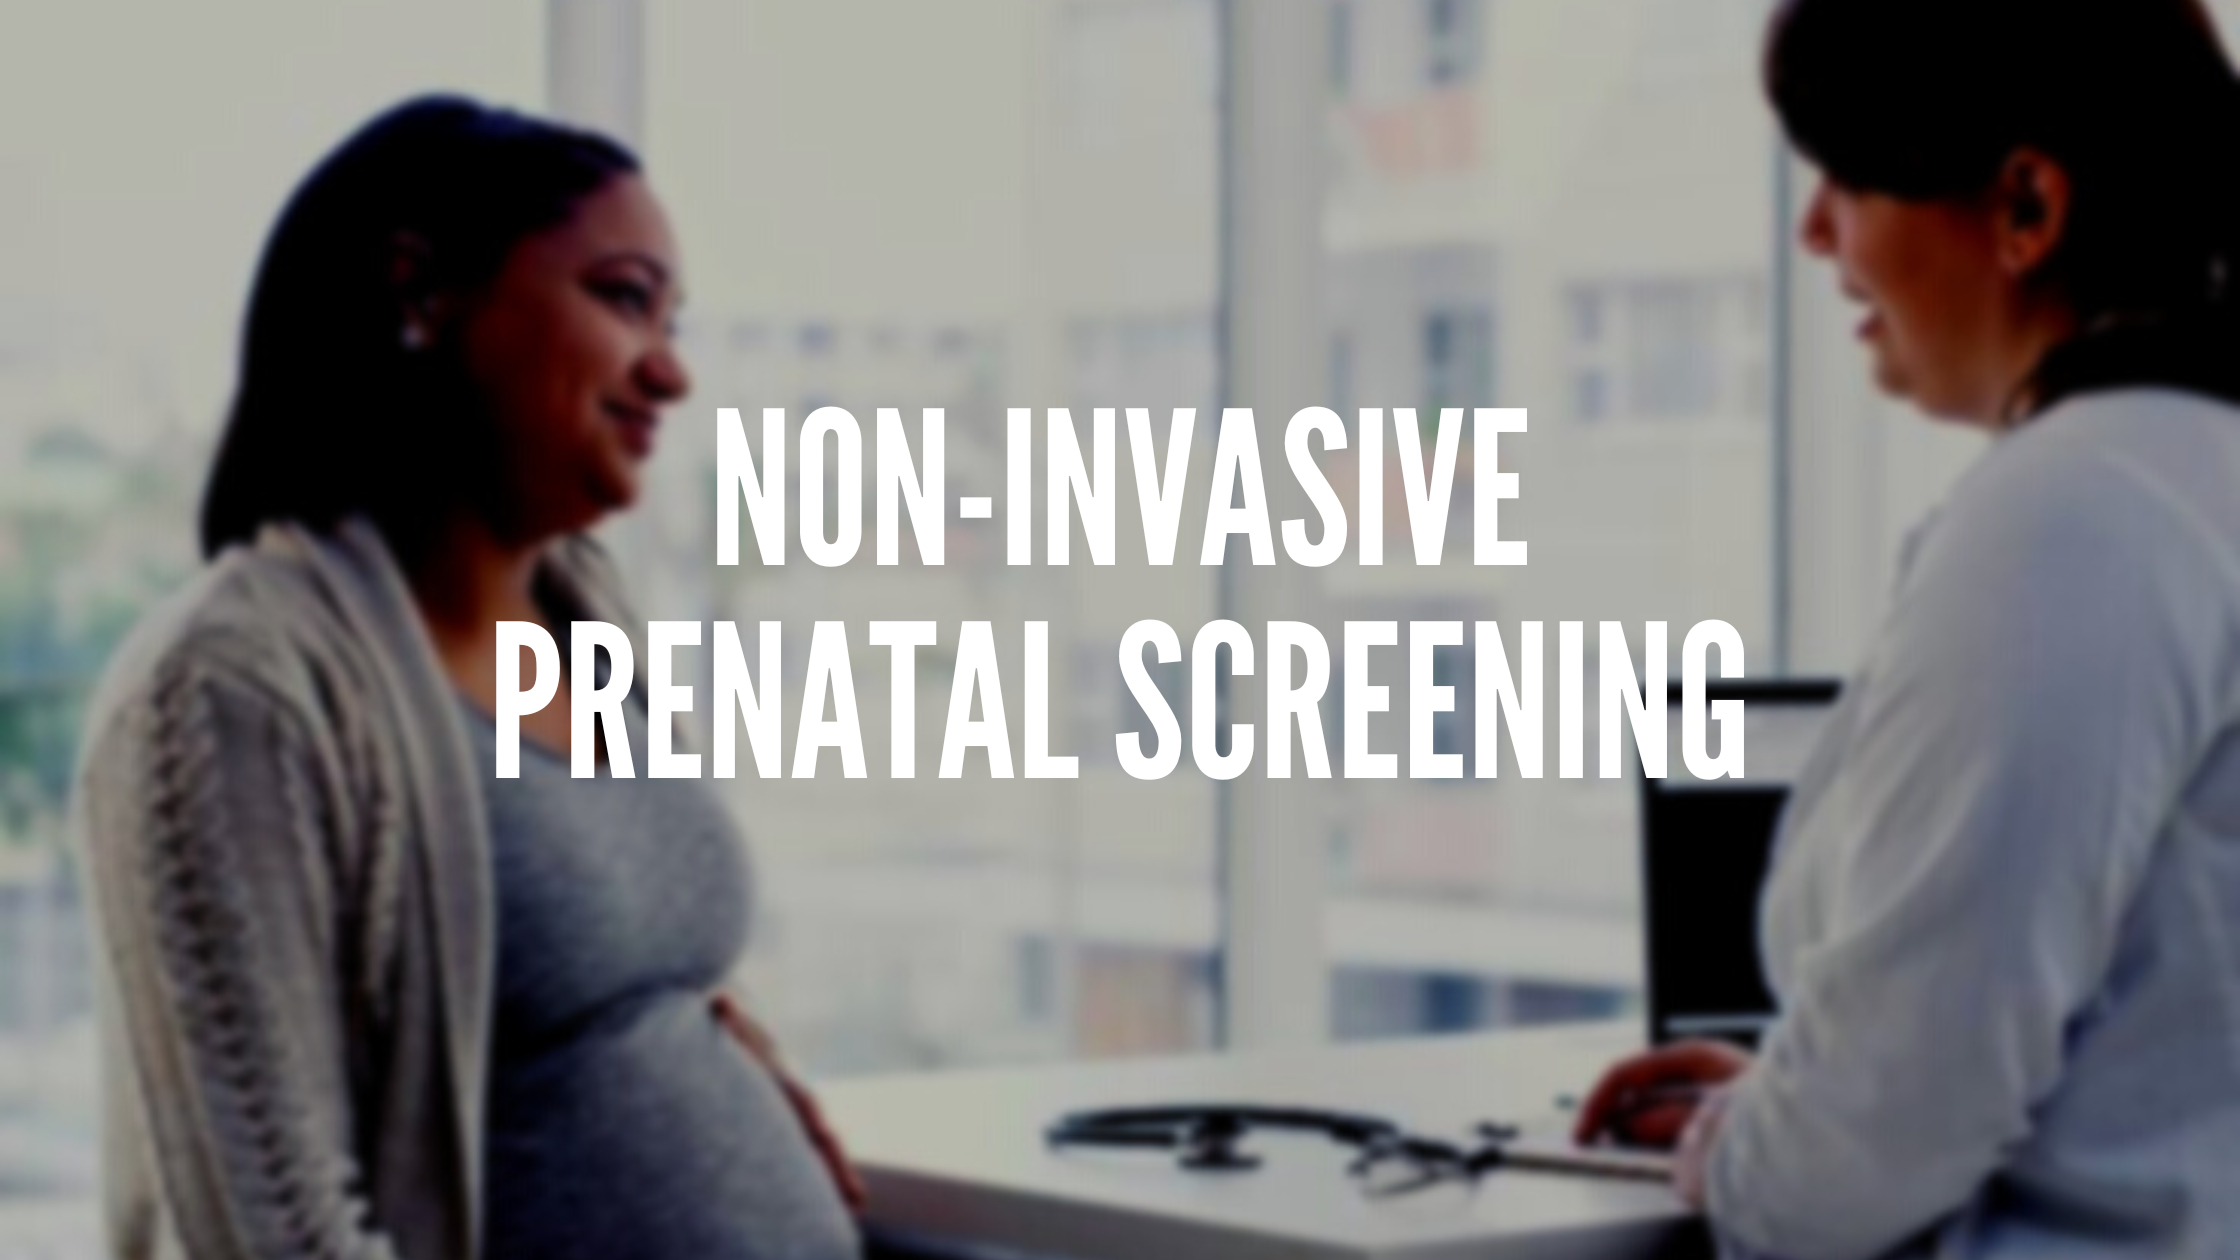 •	Non-invasive prenatal screening